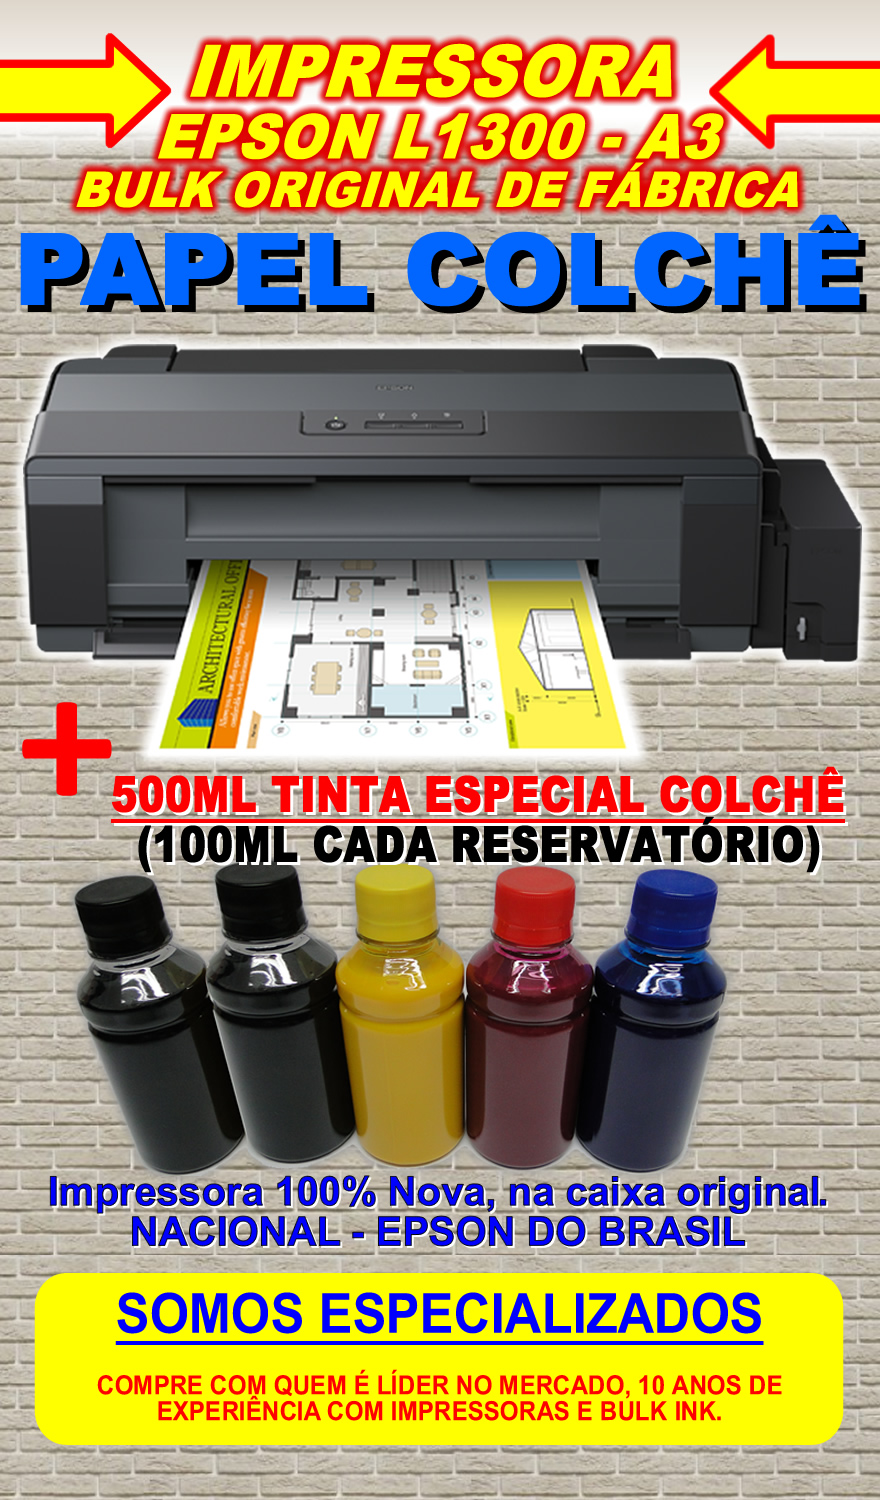 Impressora Epson L1300 A3 Ecotanque Tinta Papel Colchê R 526900 Em Mercado Livre 3132